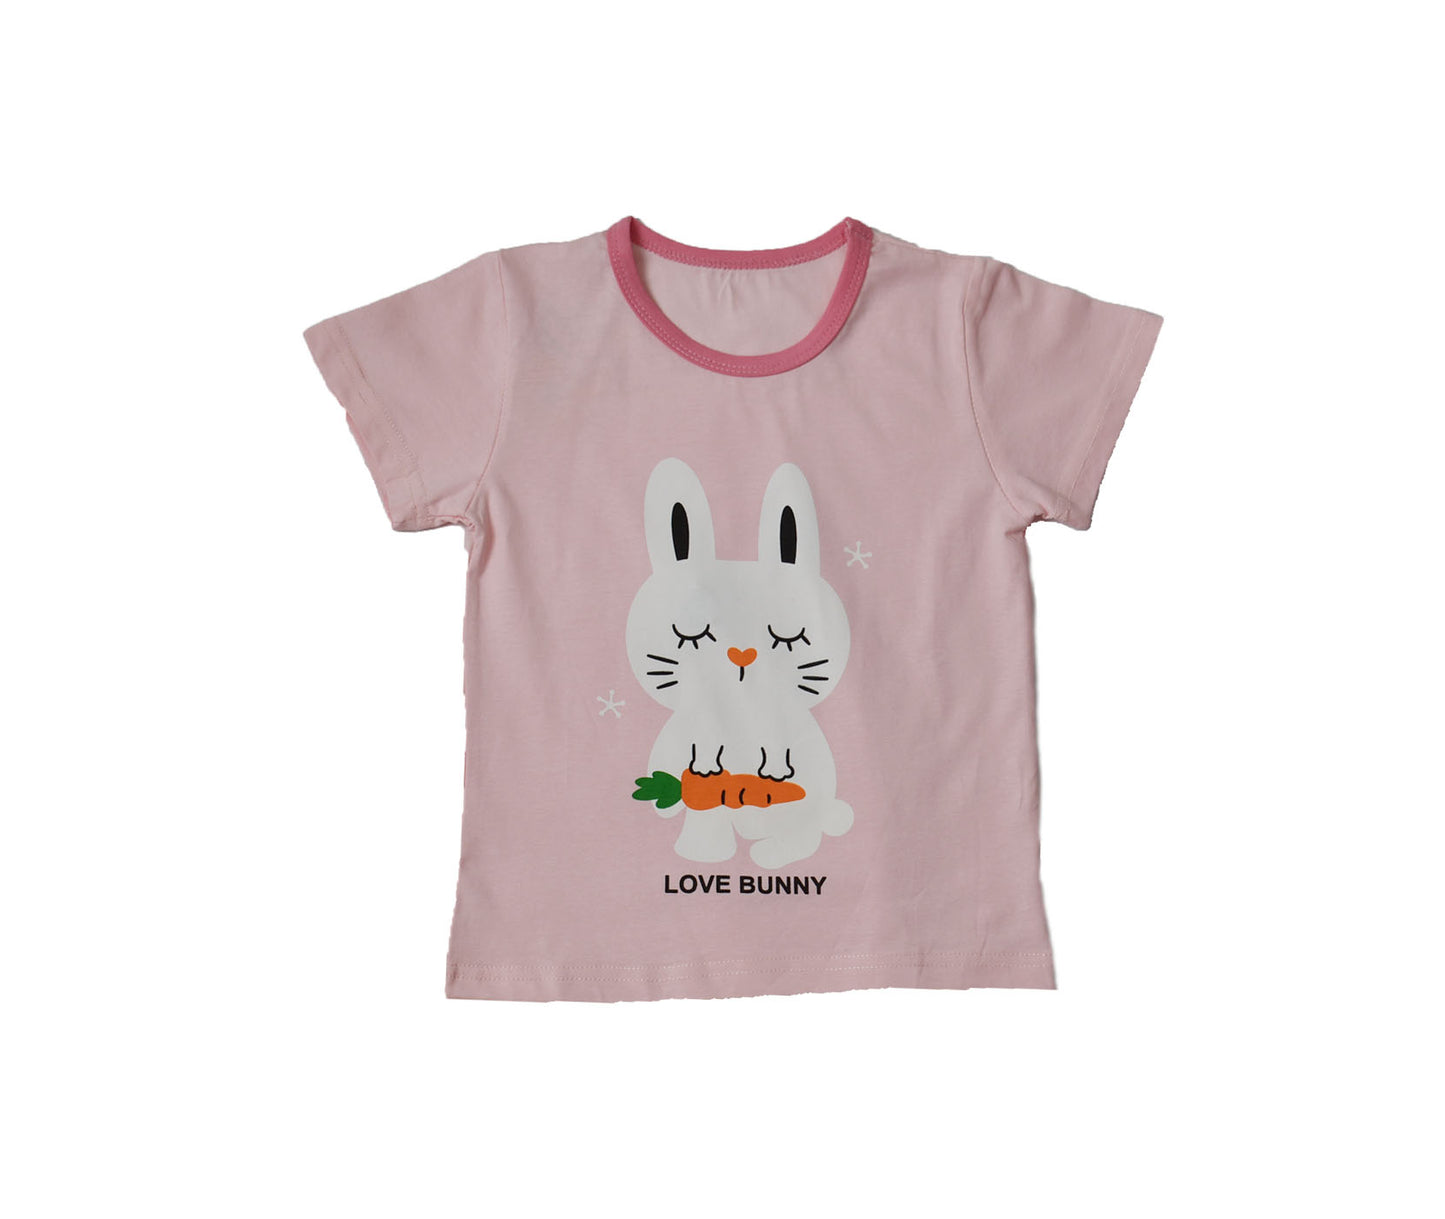 T-shirt & Shorts Pink Bunny